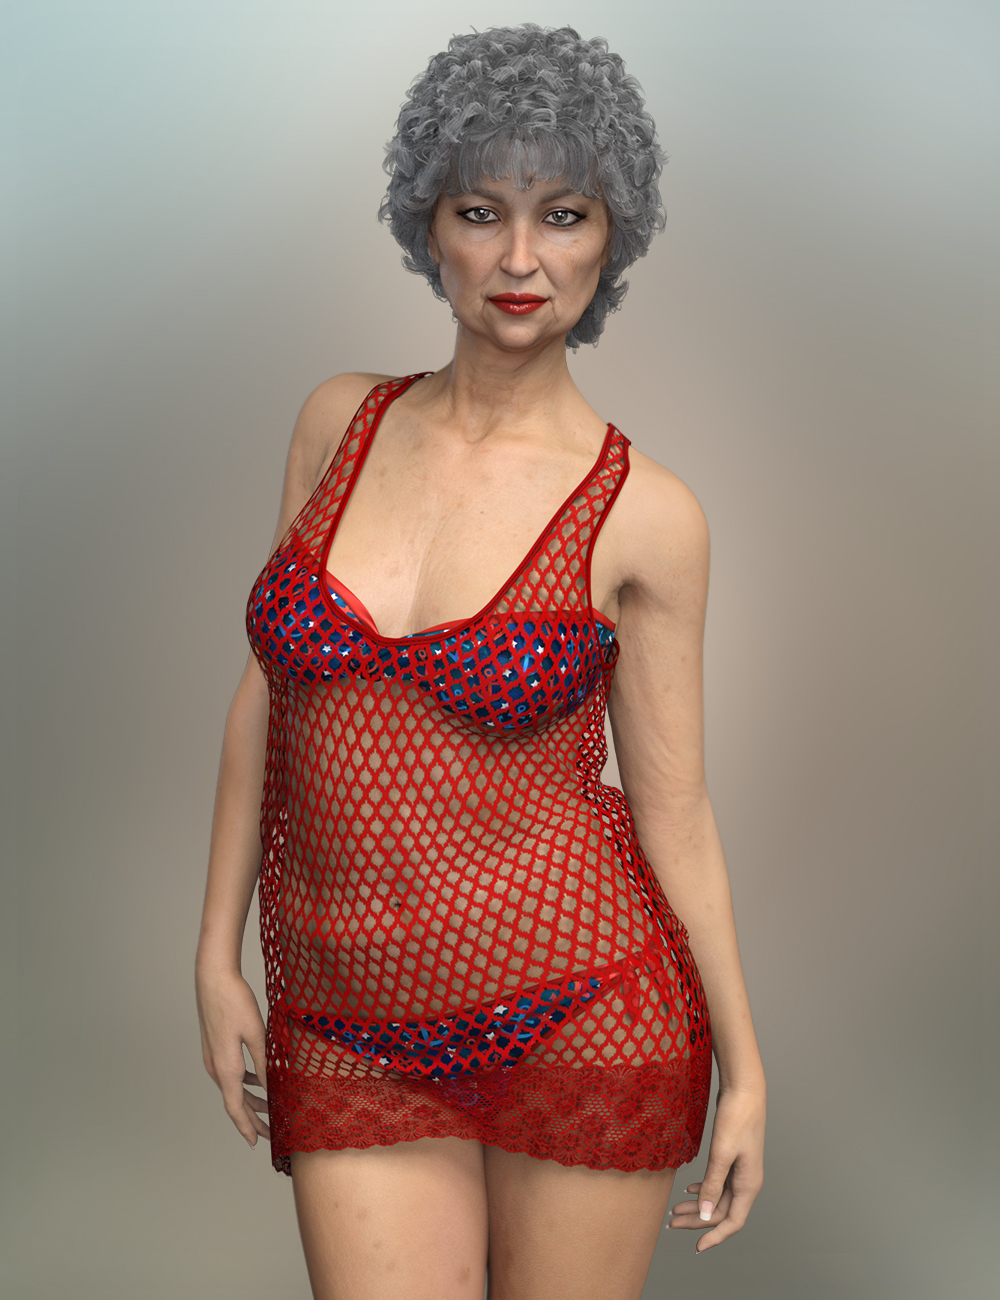 FWSA Blanche HD for Mabel 8 by: Fred Winkler ArtSabby, 3D Models by Daz 3D